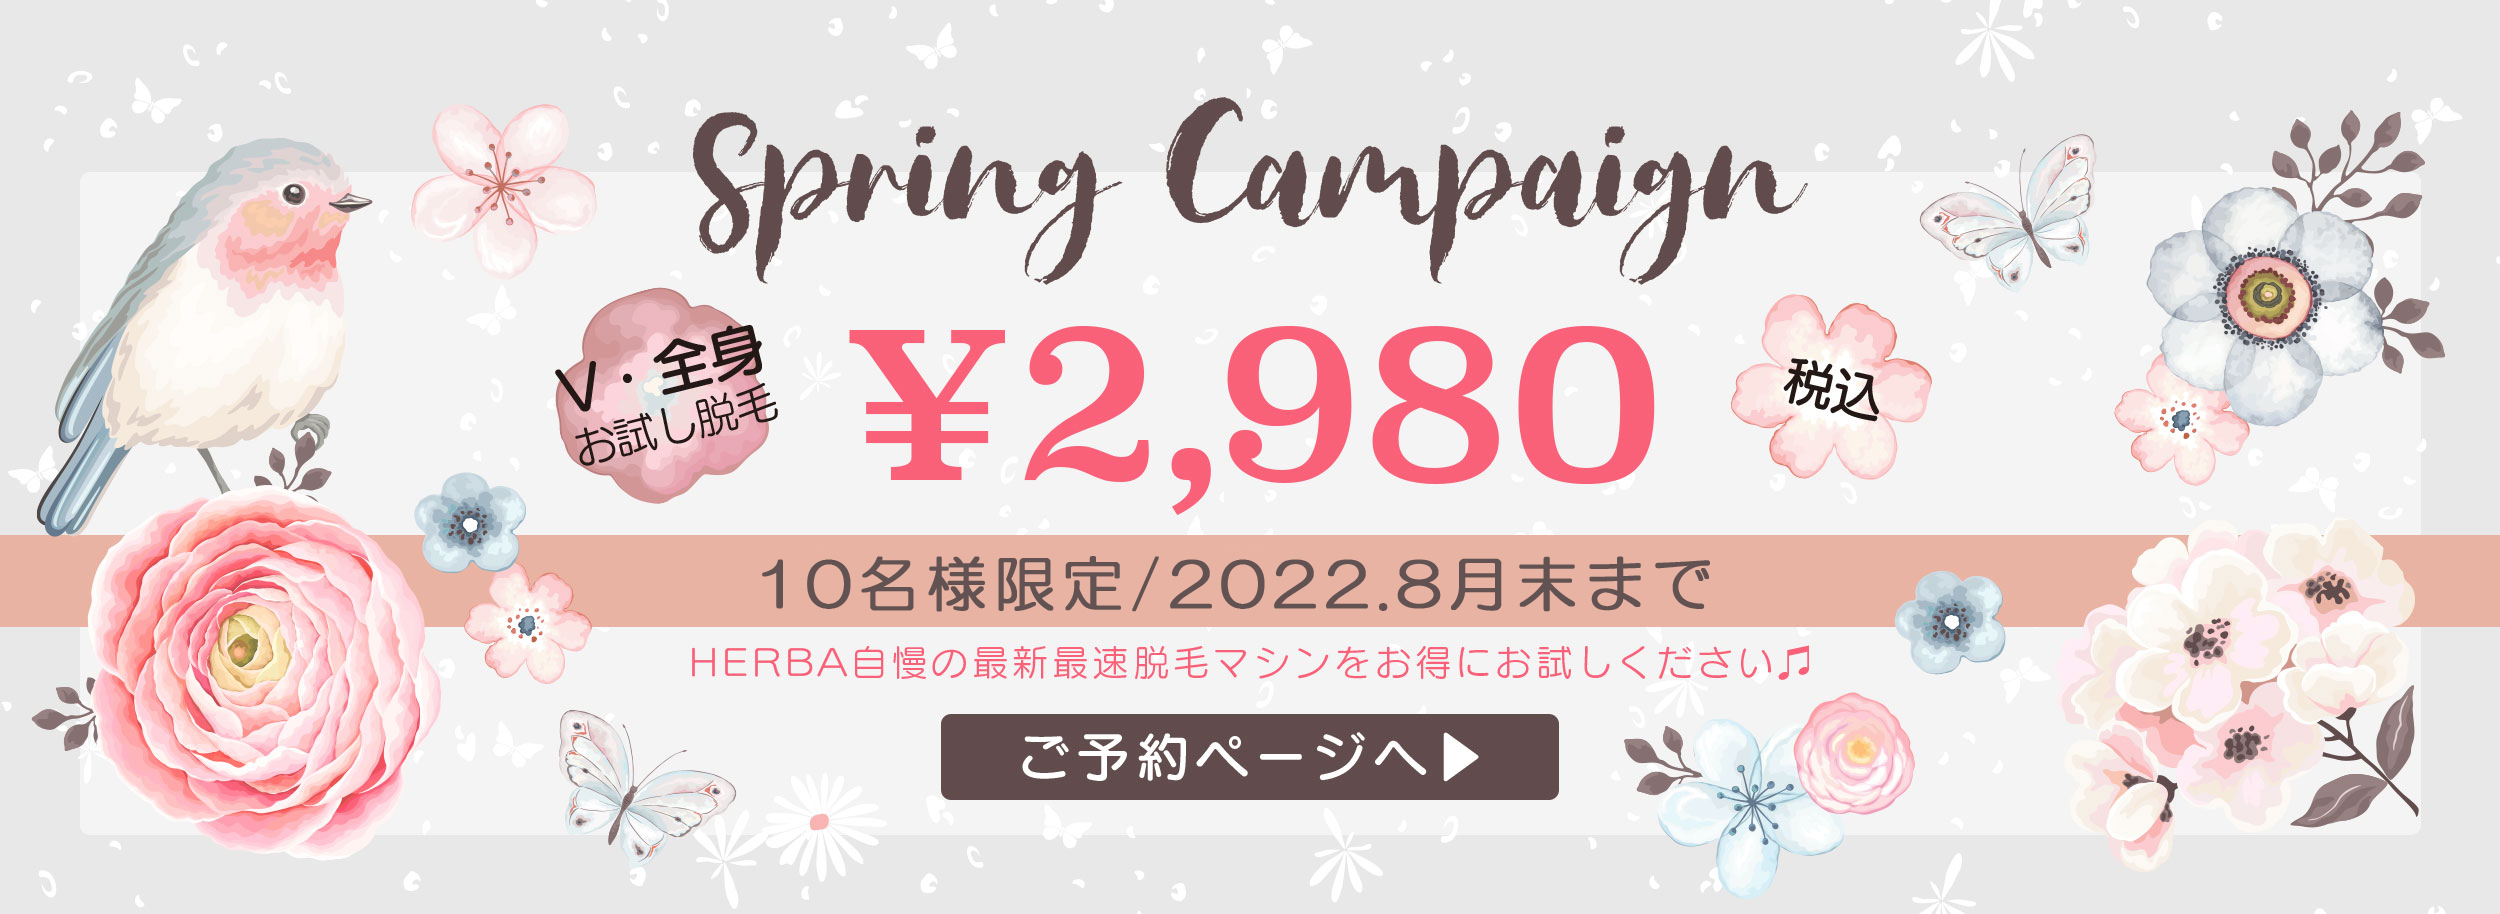 旭川エステティックサロン ヘルバ 2020スプリングキャンペーン